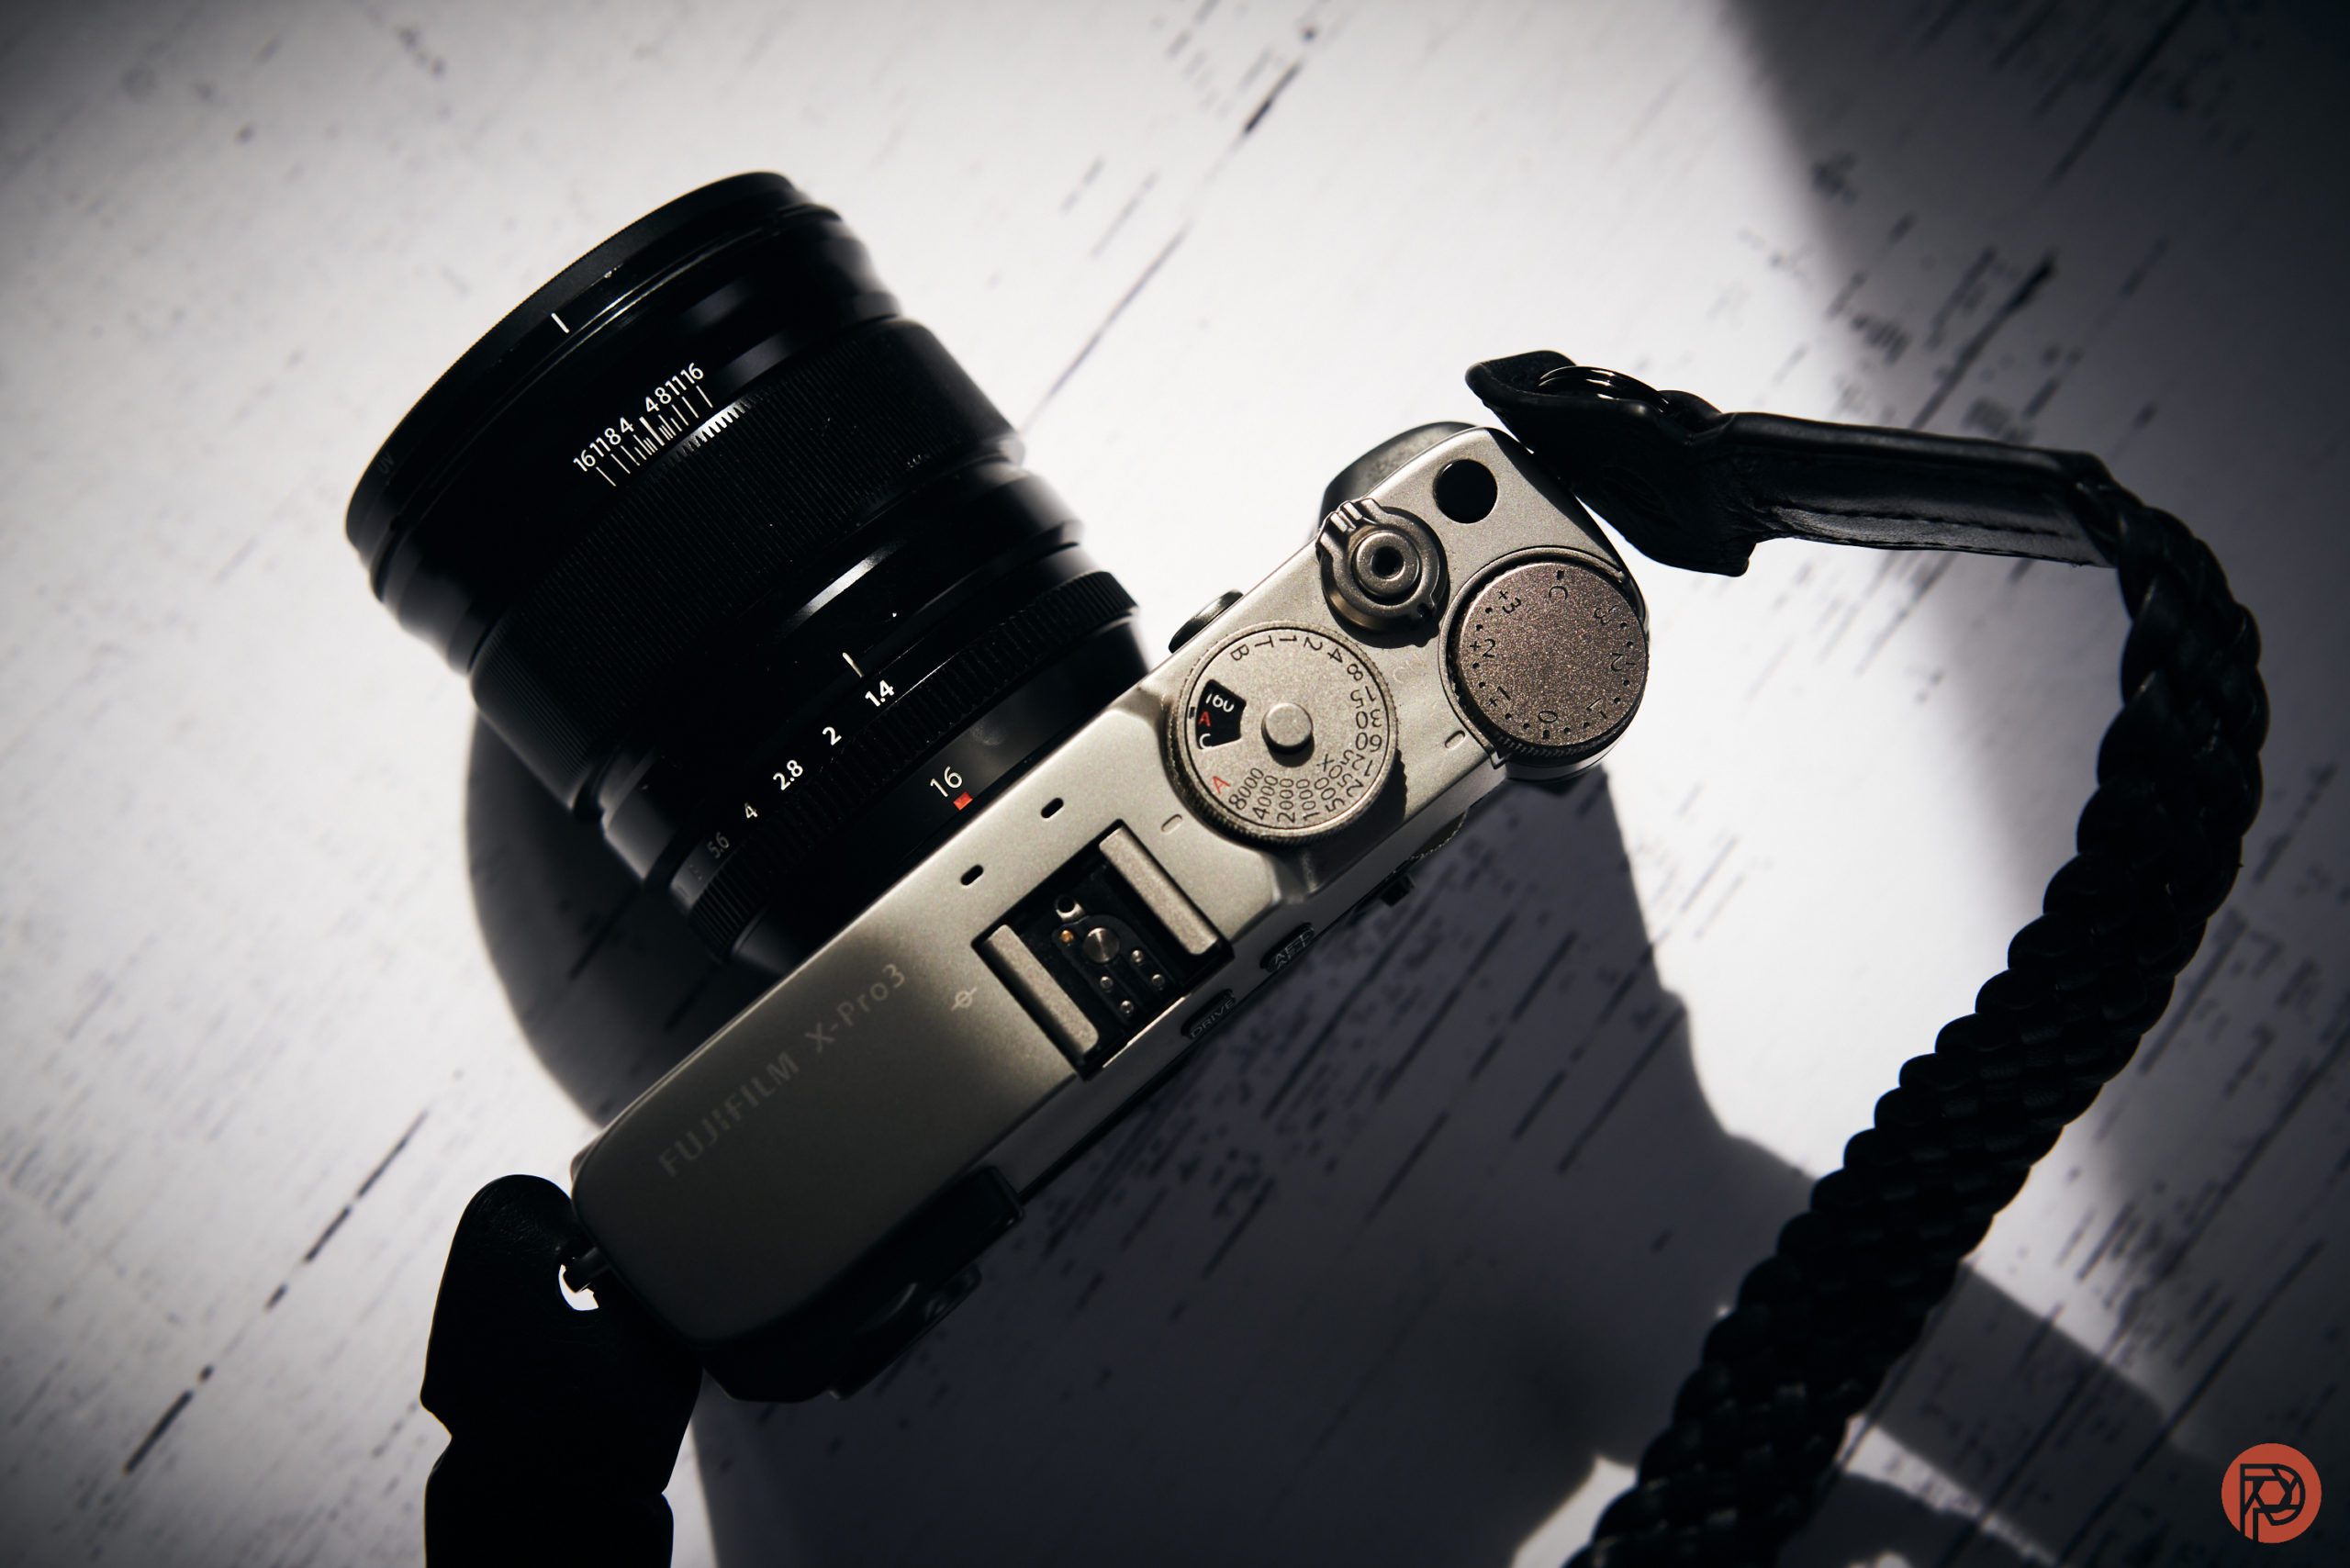 XF 16mm F1.4 R WR Lens - Lens & Filter